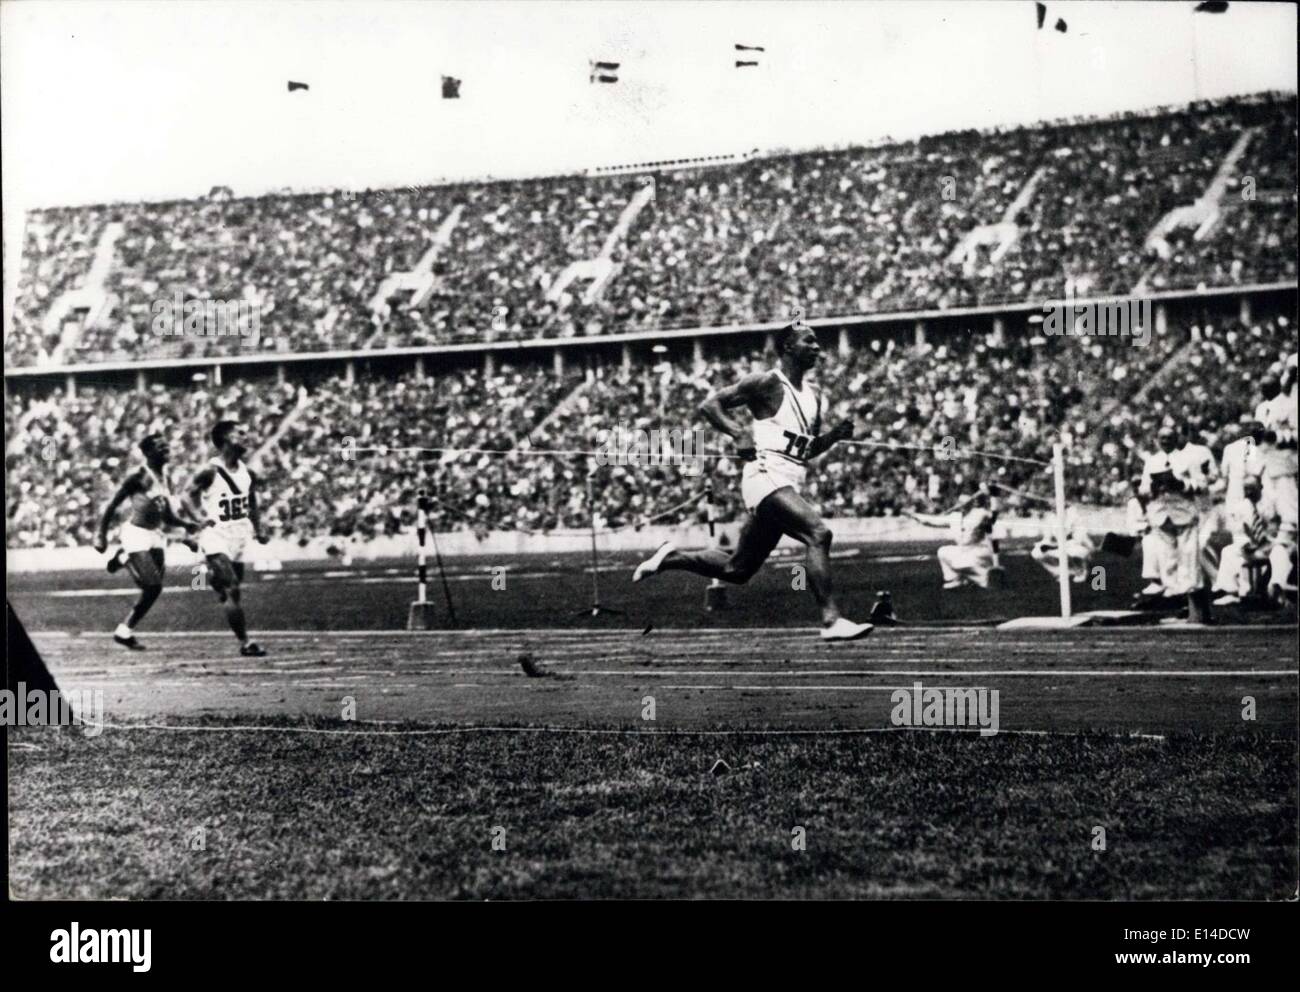 Le 17 avril 2012 - Jeux Olympiques de Berlin - 1936-Américain Jesse Owens en battant le record du monde du 100 mètres en 10,3 secondes. Banque D'Images